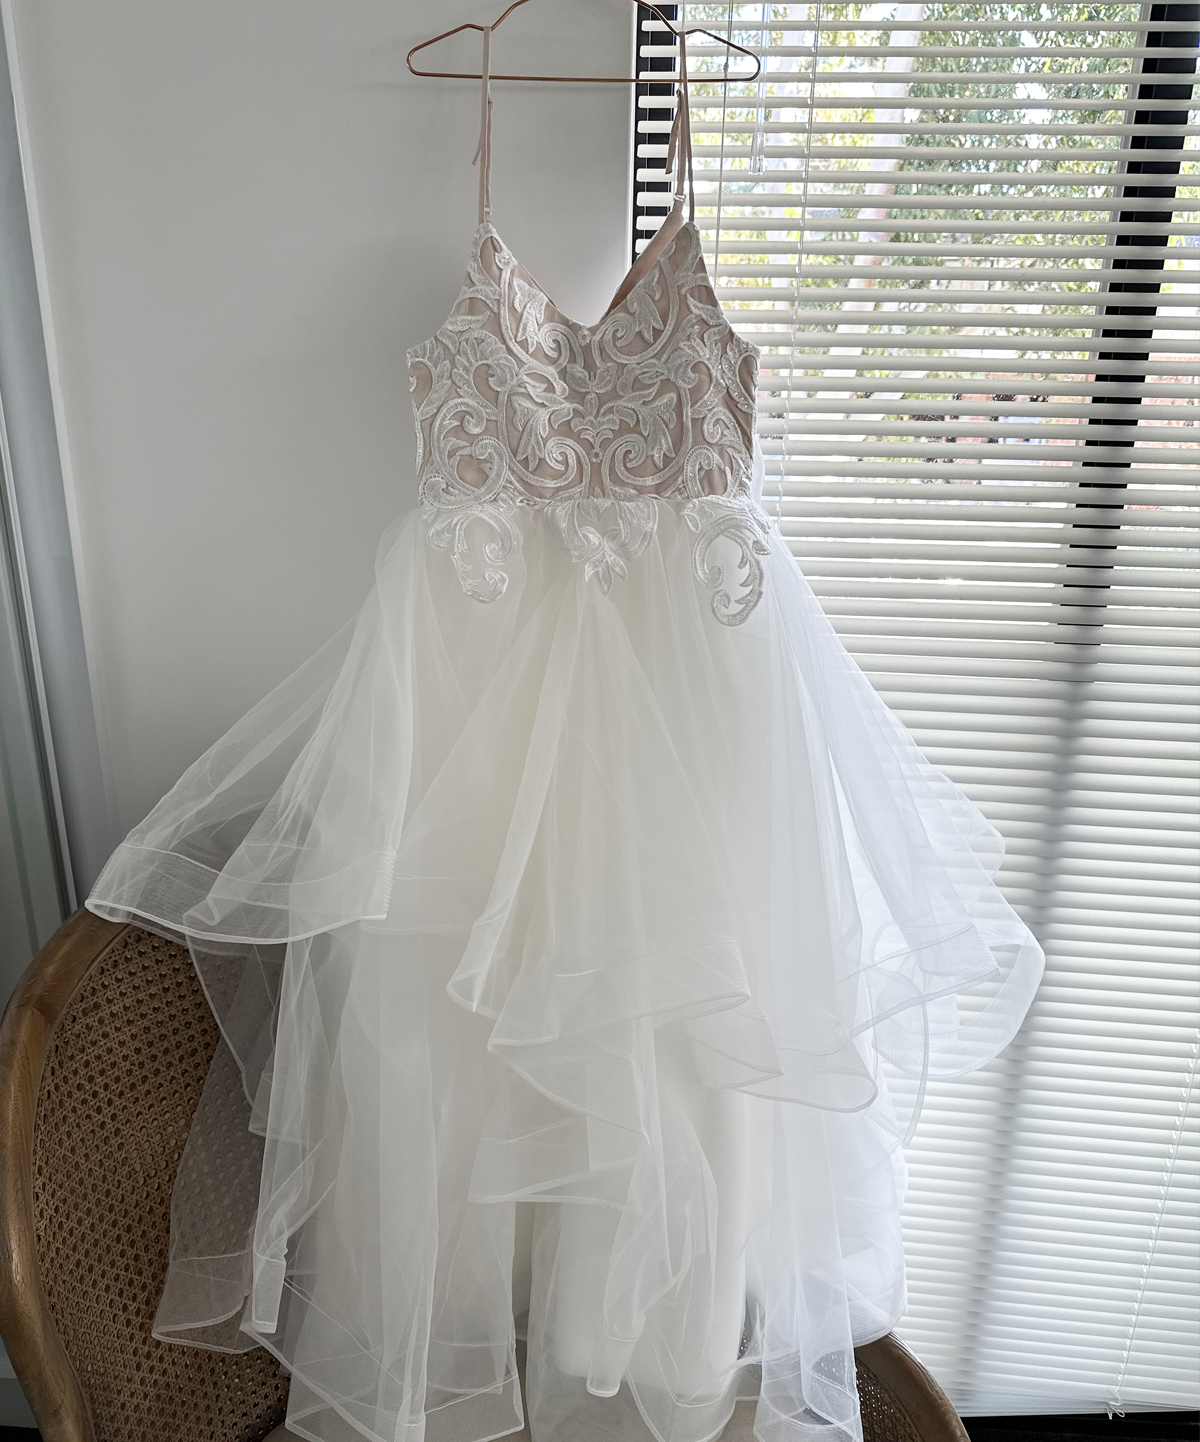 Aveline in White + Blush - Flower Girl Dress